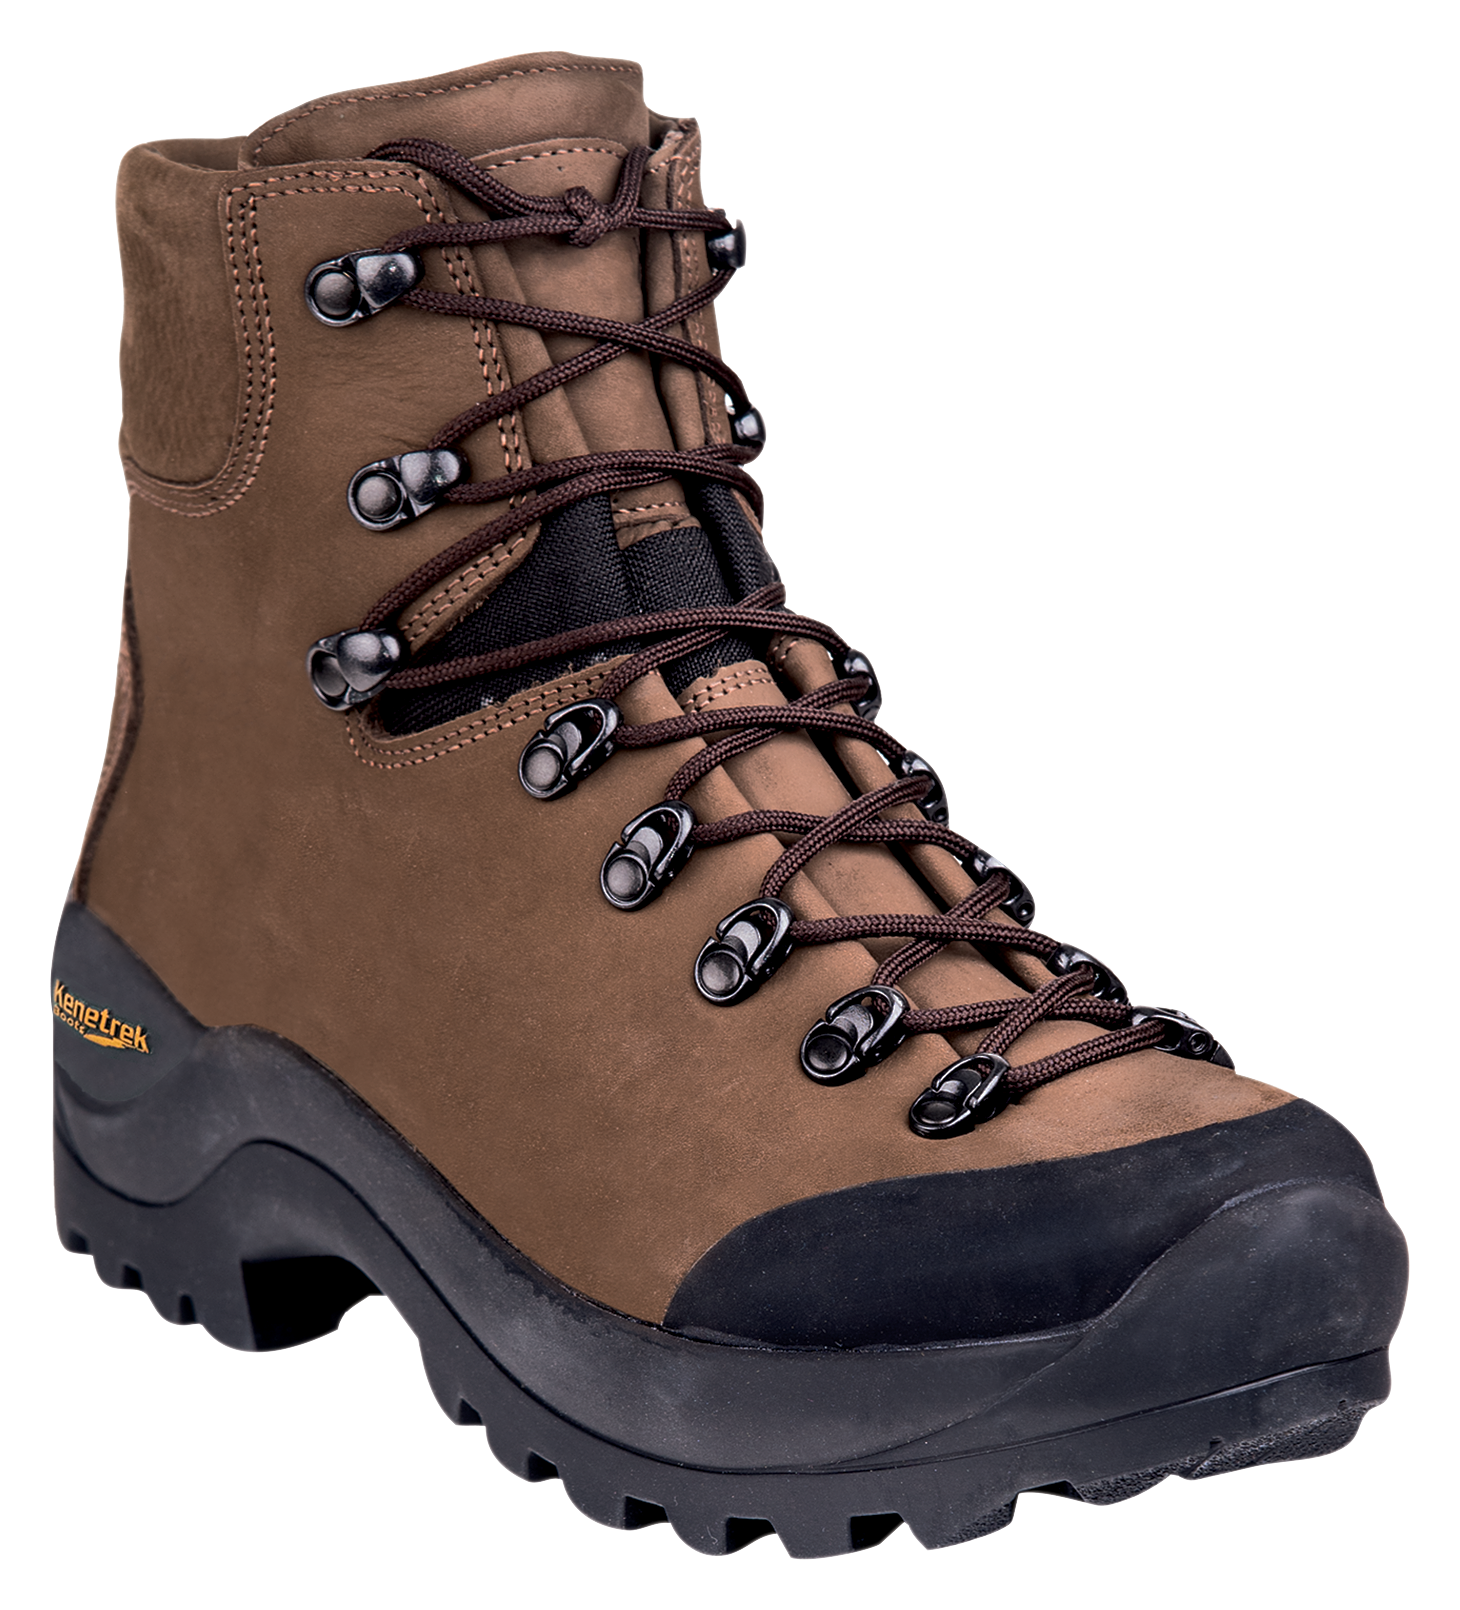 Kenetrek Desert Guide Hunting Boots for Men - Brown - 8.5W